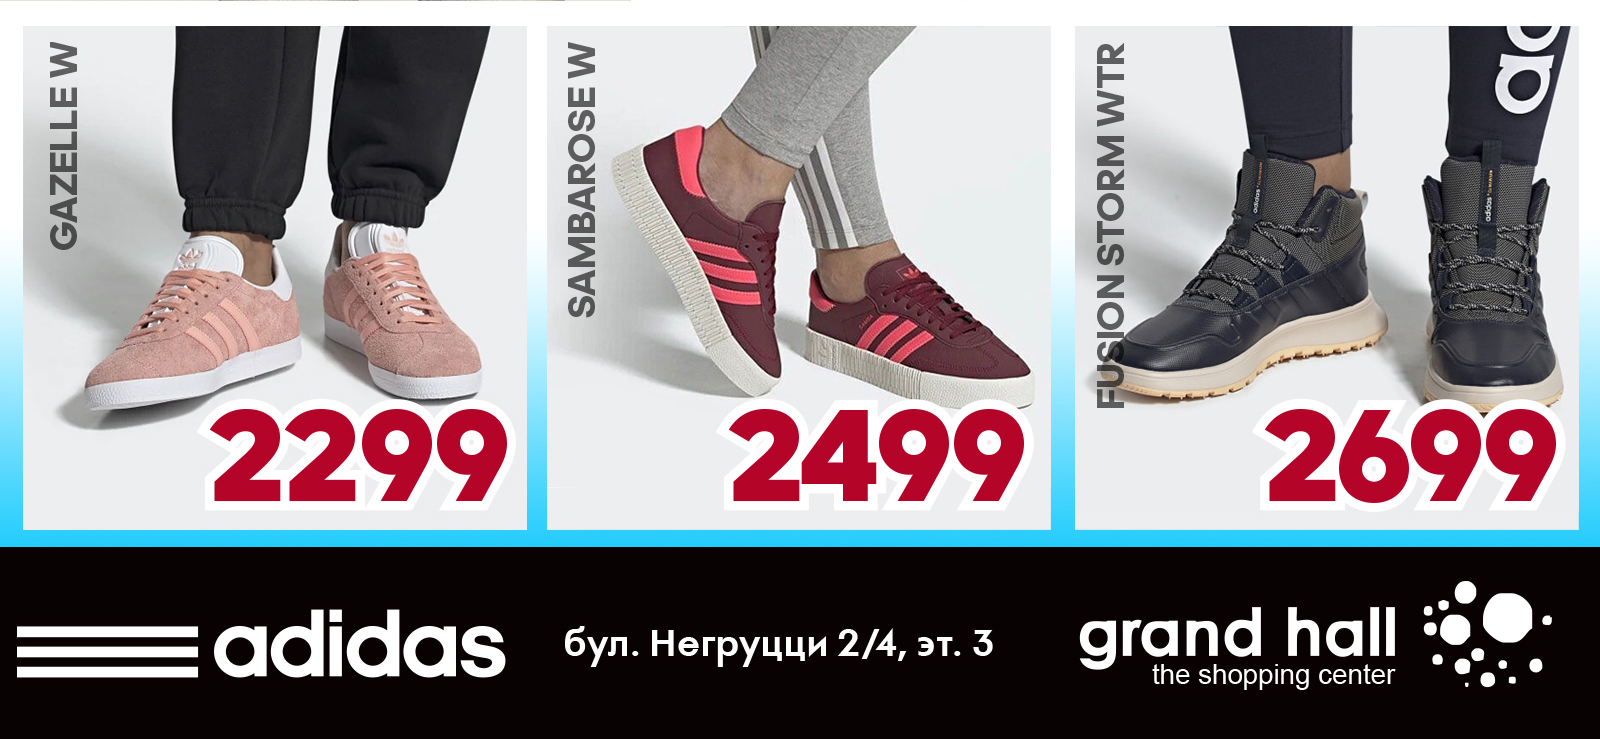 купить adidas молдова